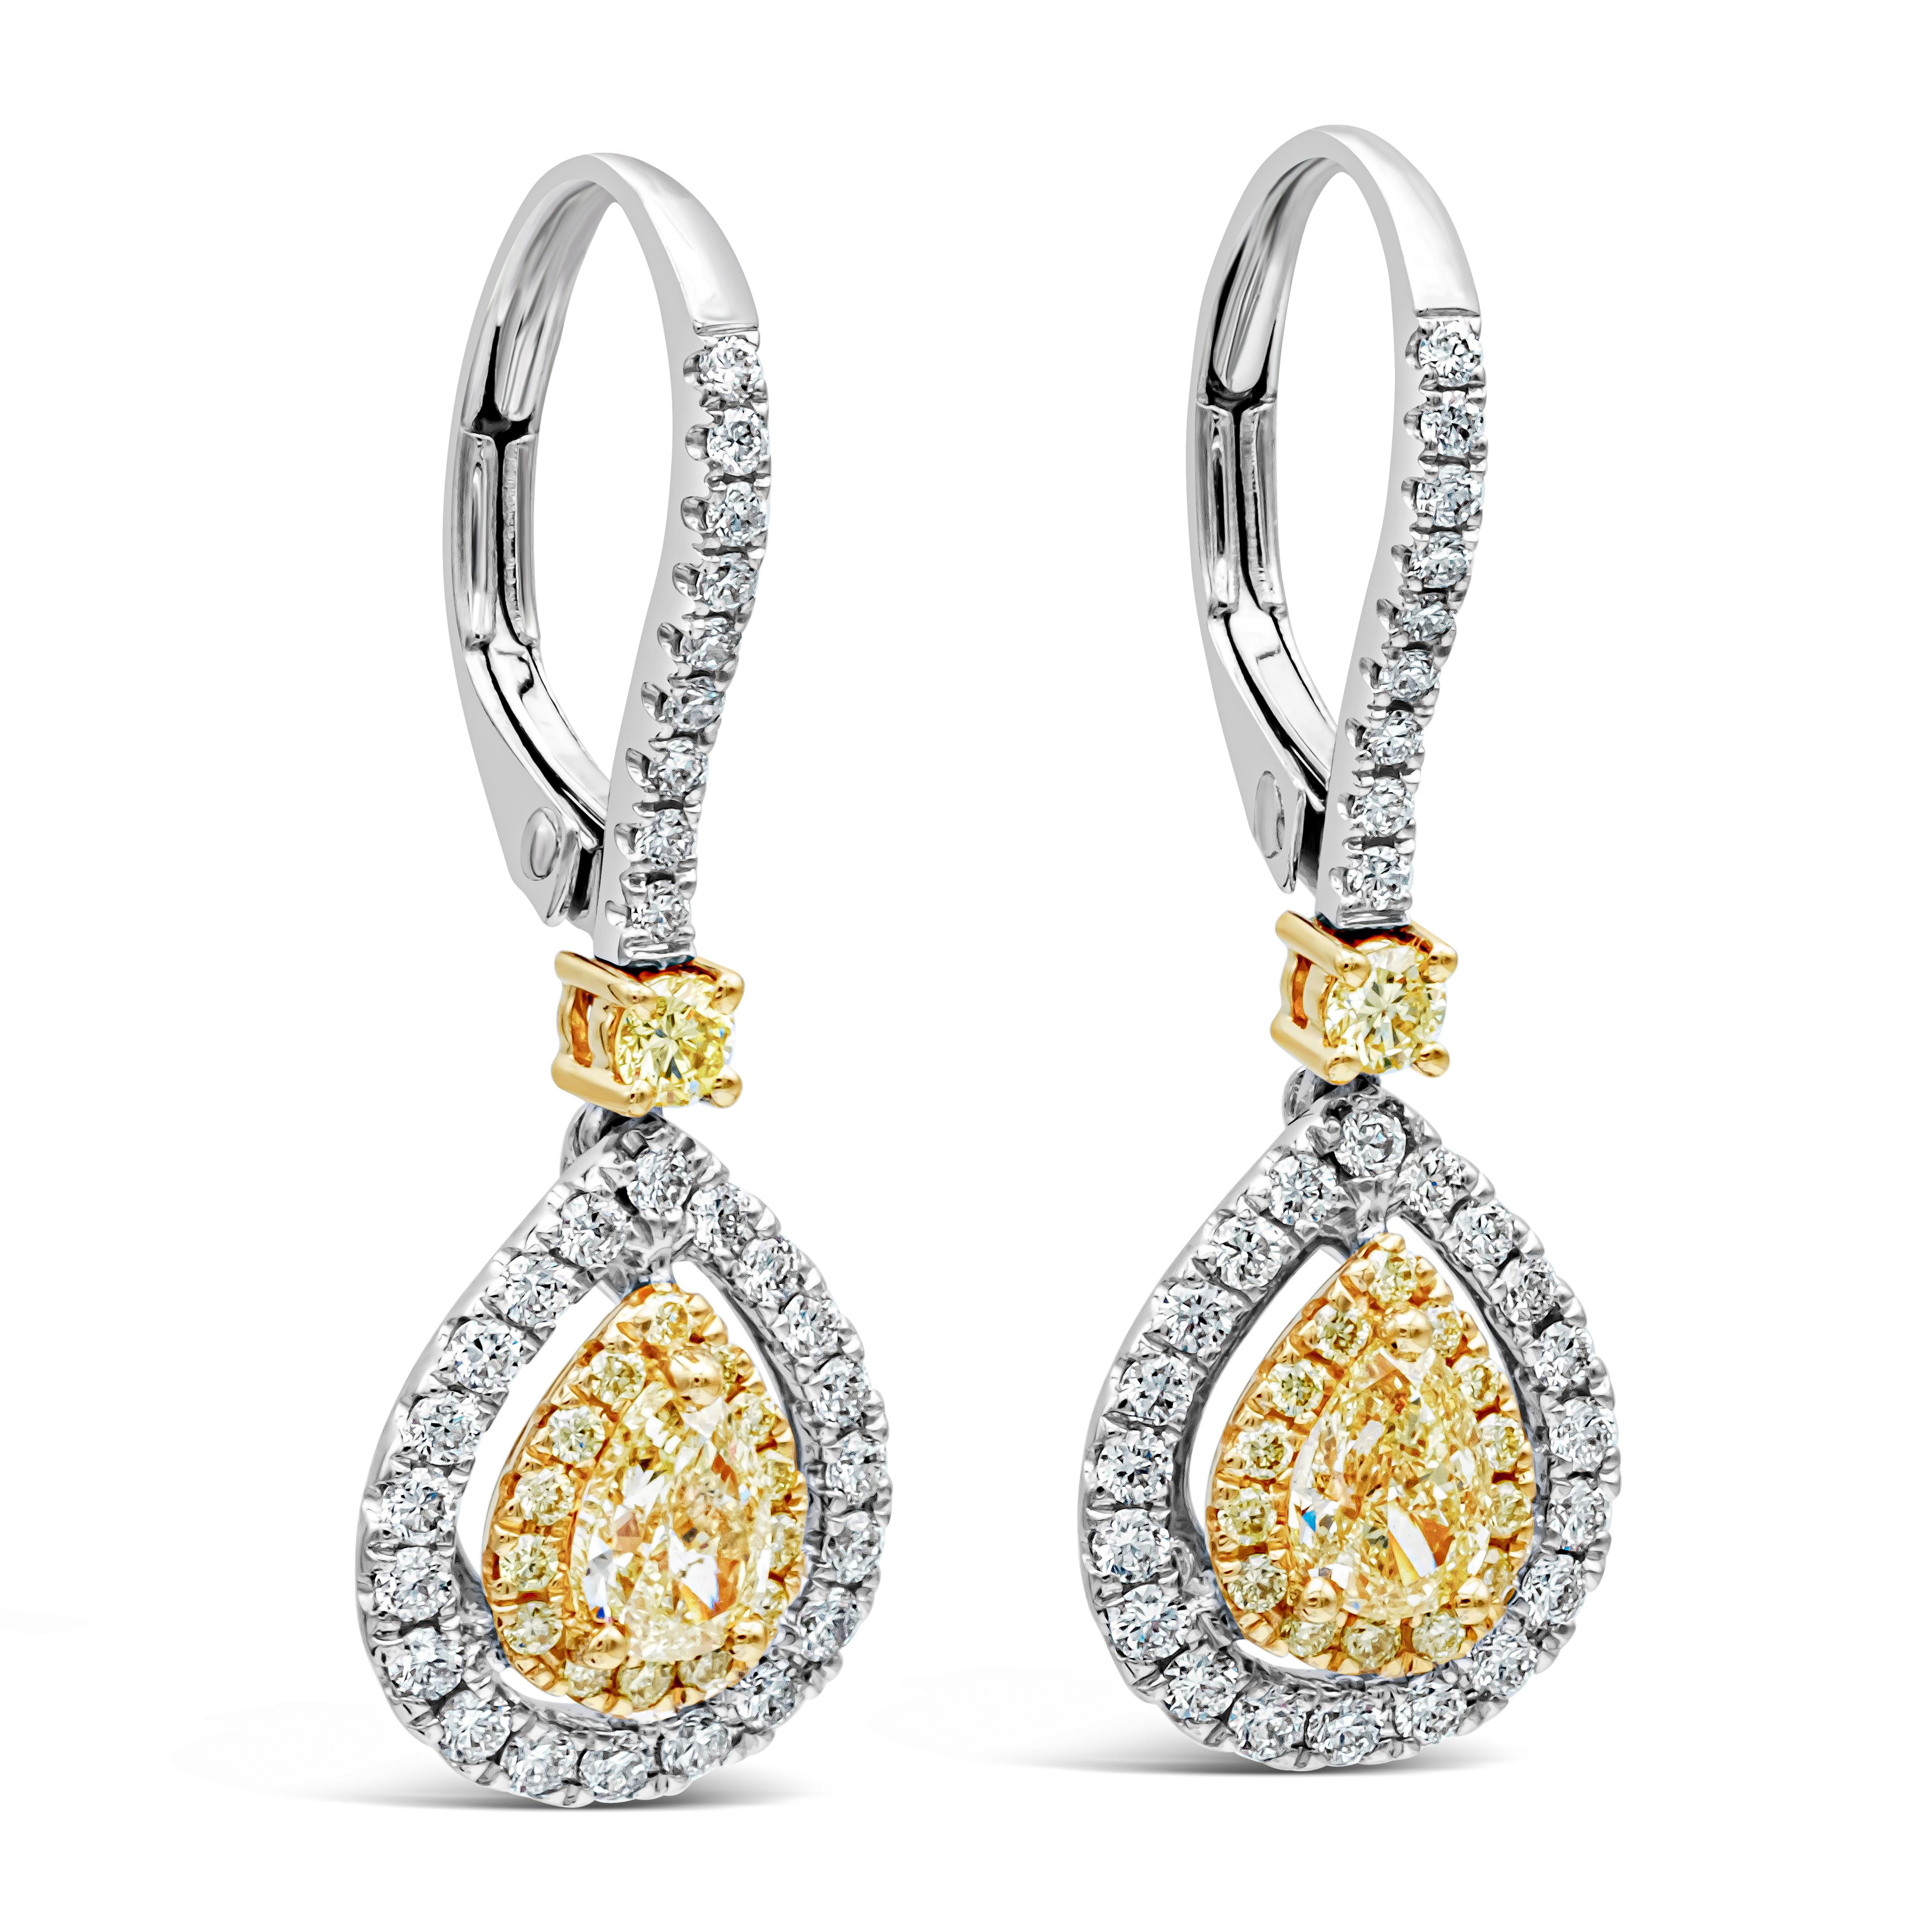 Cette magnifique paire de boucles d'oreilles présente un diamant jaune de forme poire entouré d'un halo de diamants jaunes ronds et d'un halo extérieur de diamants blancs ronds. Il est suspendu à une bague à levier incrustée de diamants, avec un